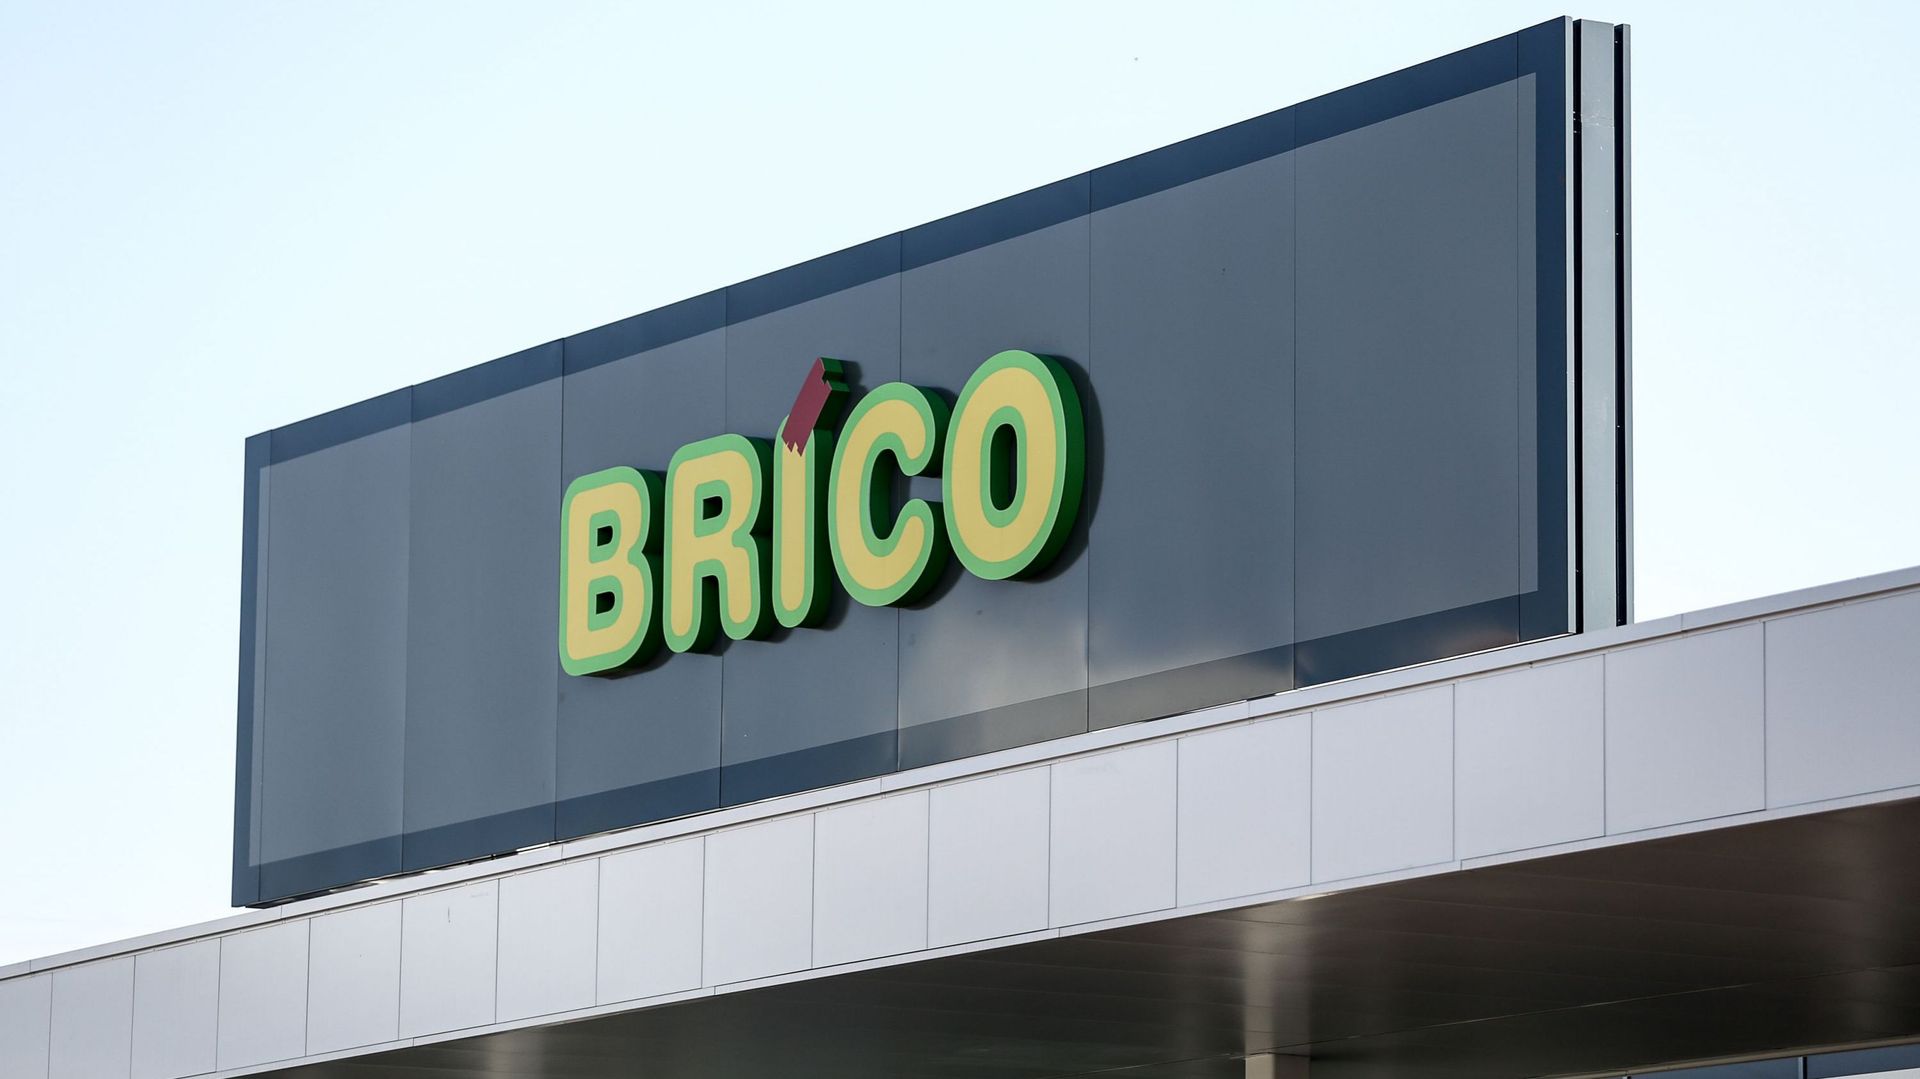 Greenpeace déplore cependant que le personnel de certains magasins ait appelé la police à l'arrivée des militants samedi. Pour l'association, Brico n'a "pas compris" le sens de l'action "pacifique".